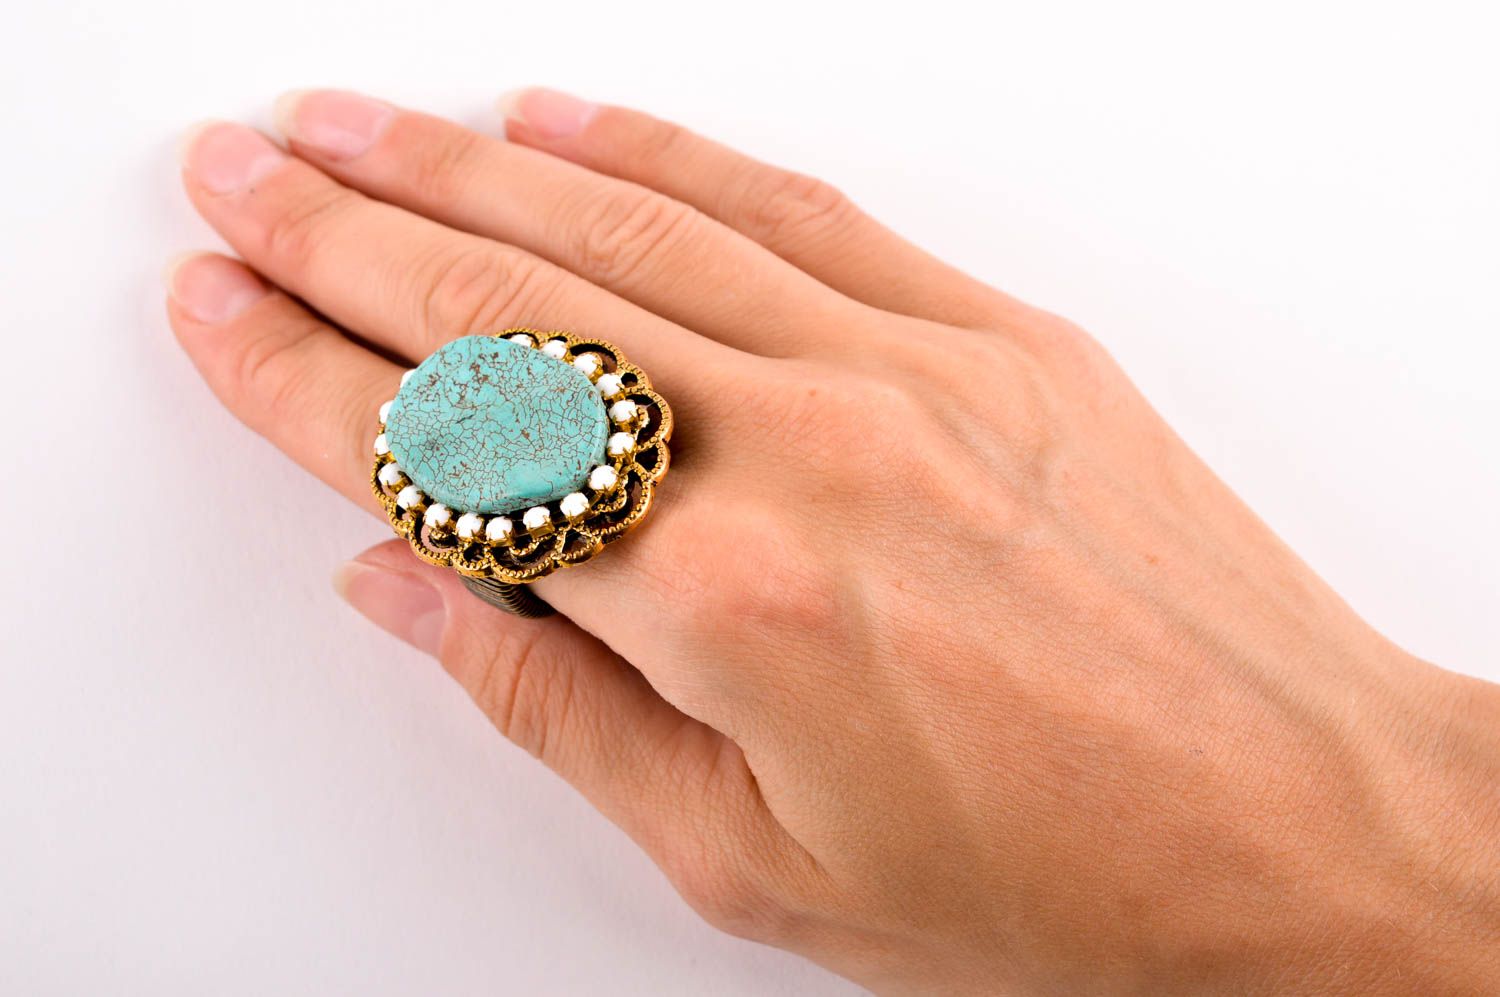 Женское кольцо хенд мейд красивое кольцо бижутерия с натуральными камнями бирюза фото 5